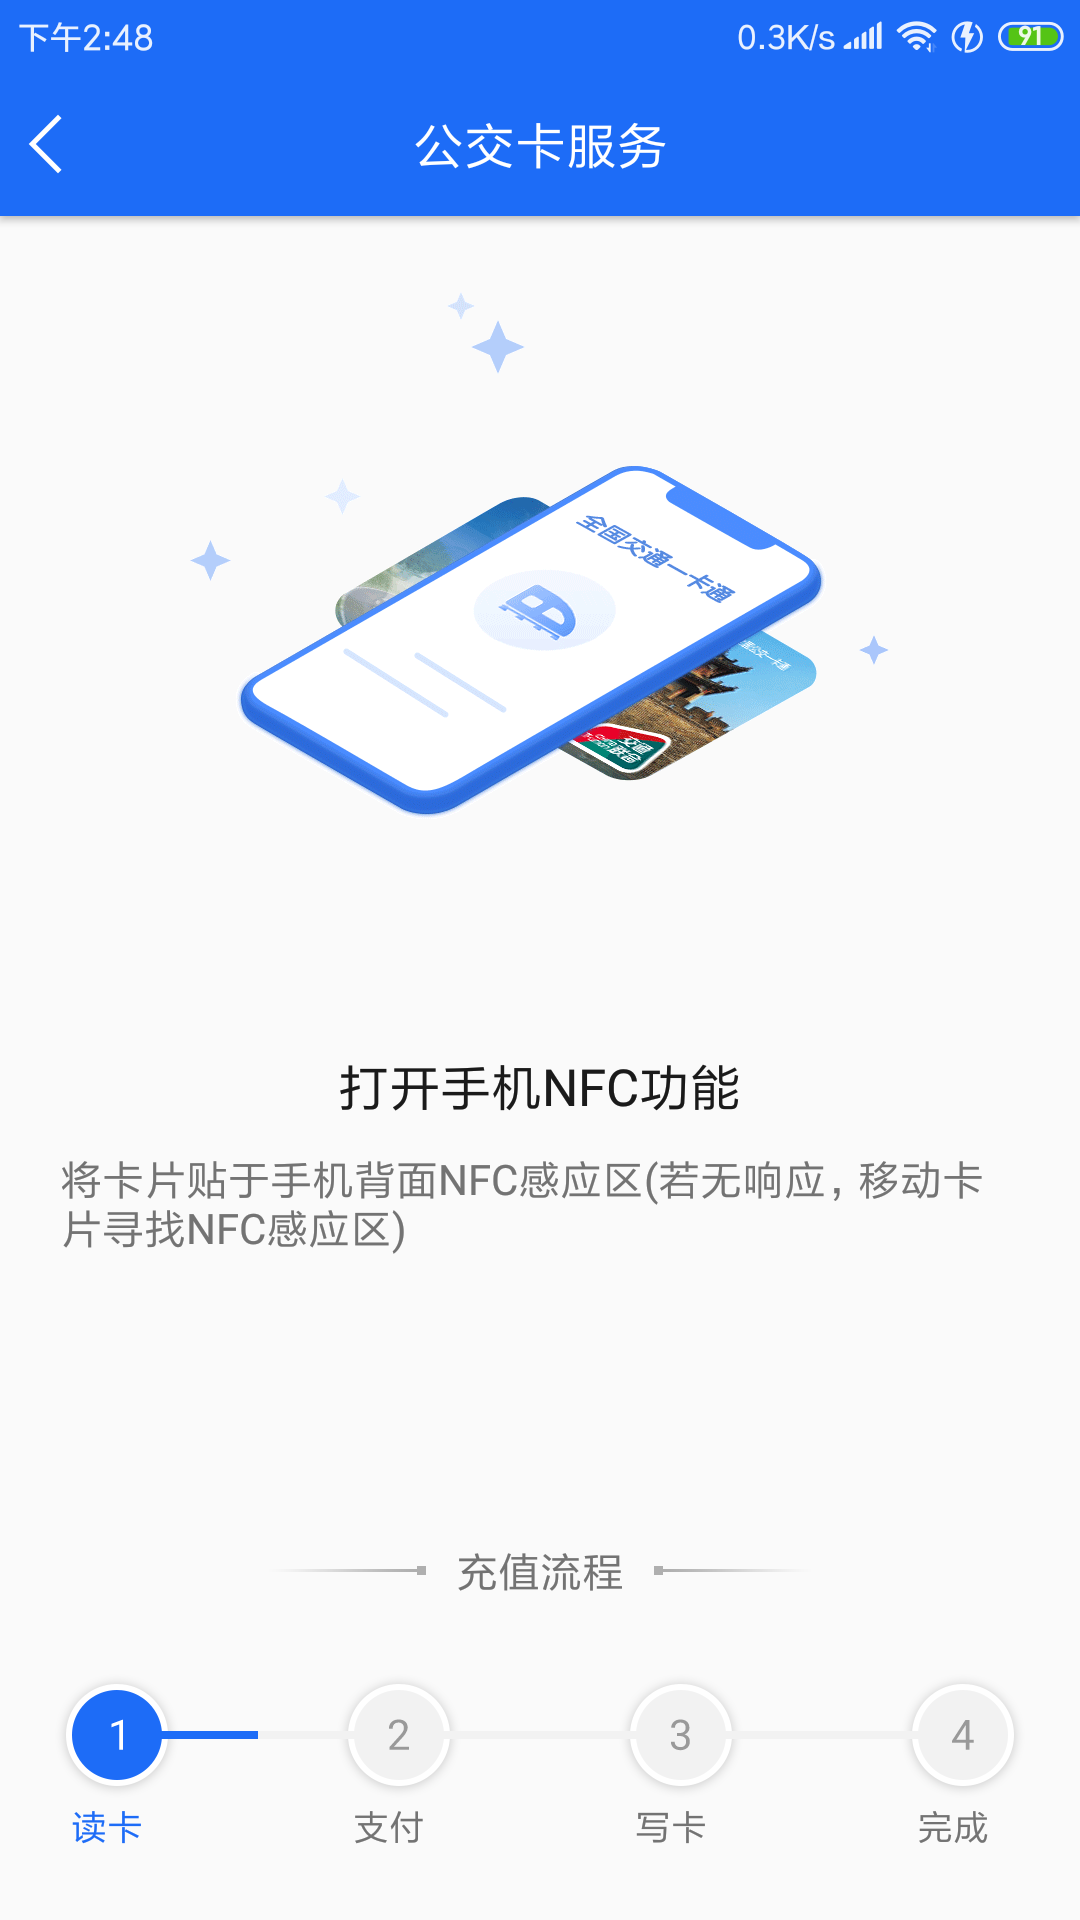 襄阳出行公交app下载